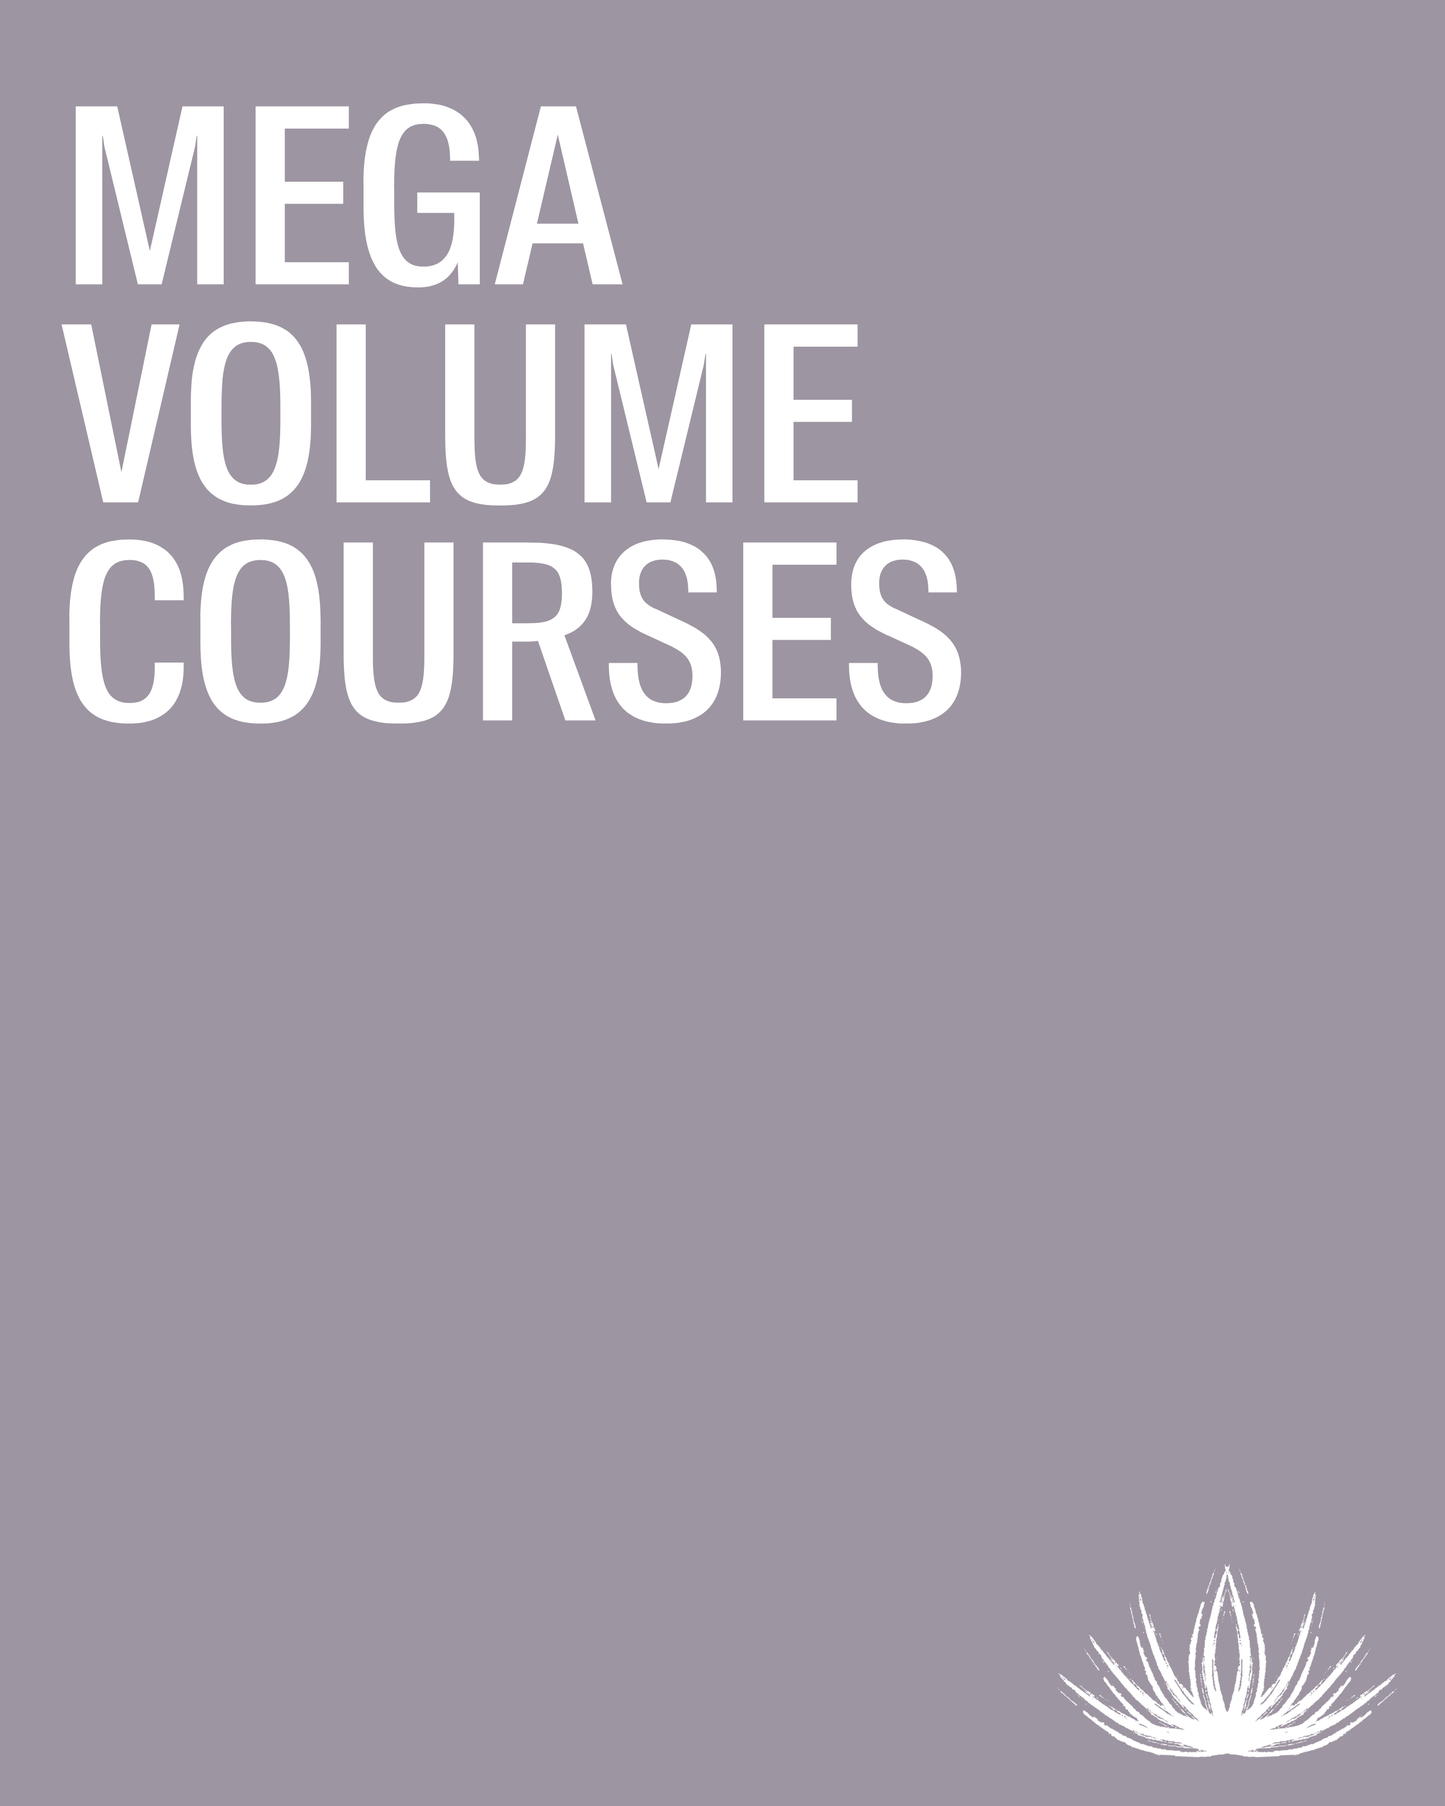 MEGA VOLUME COURSE Certification Course | Outlash Academy